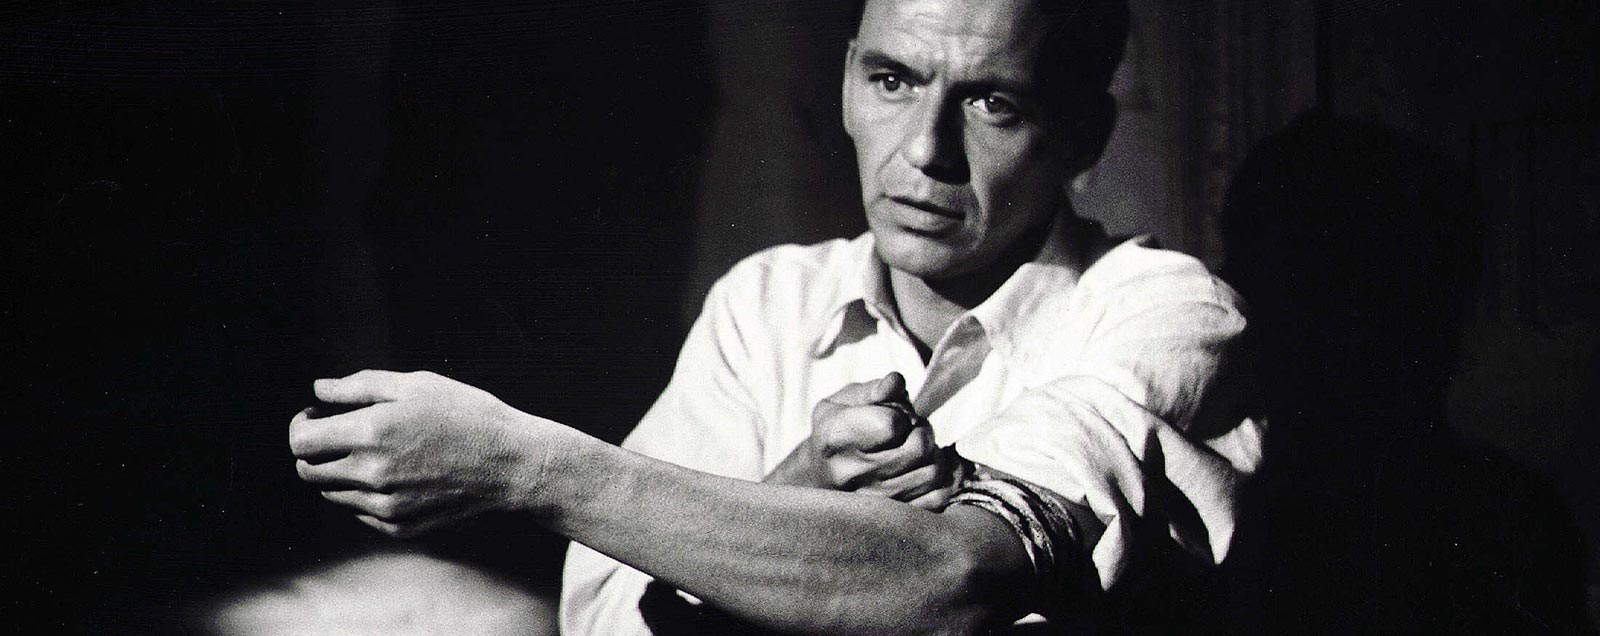 El hombre del brazo de oro, 1955. Frank Sinatra. cine clásico películas